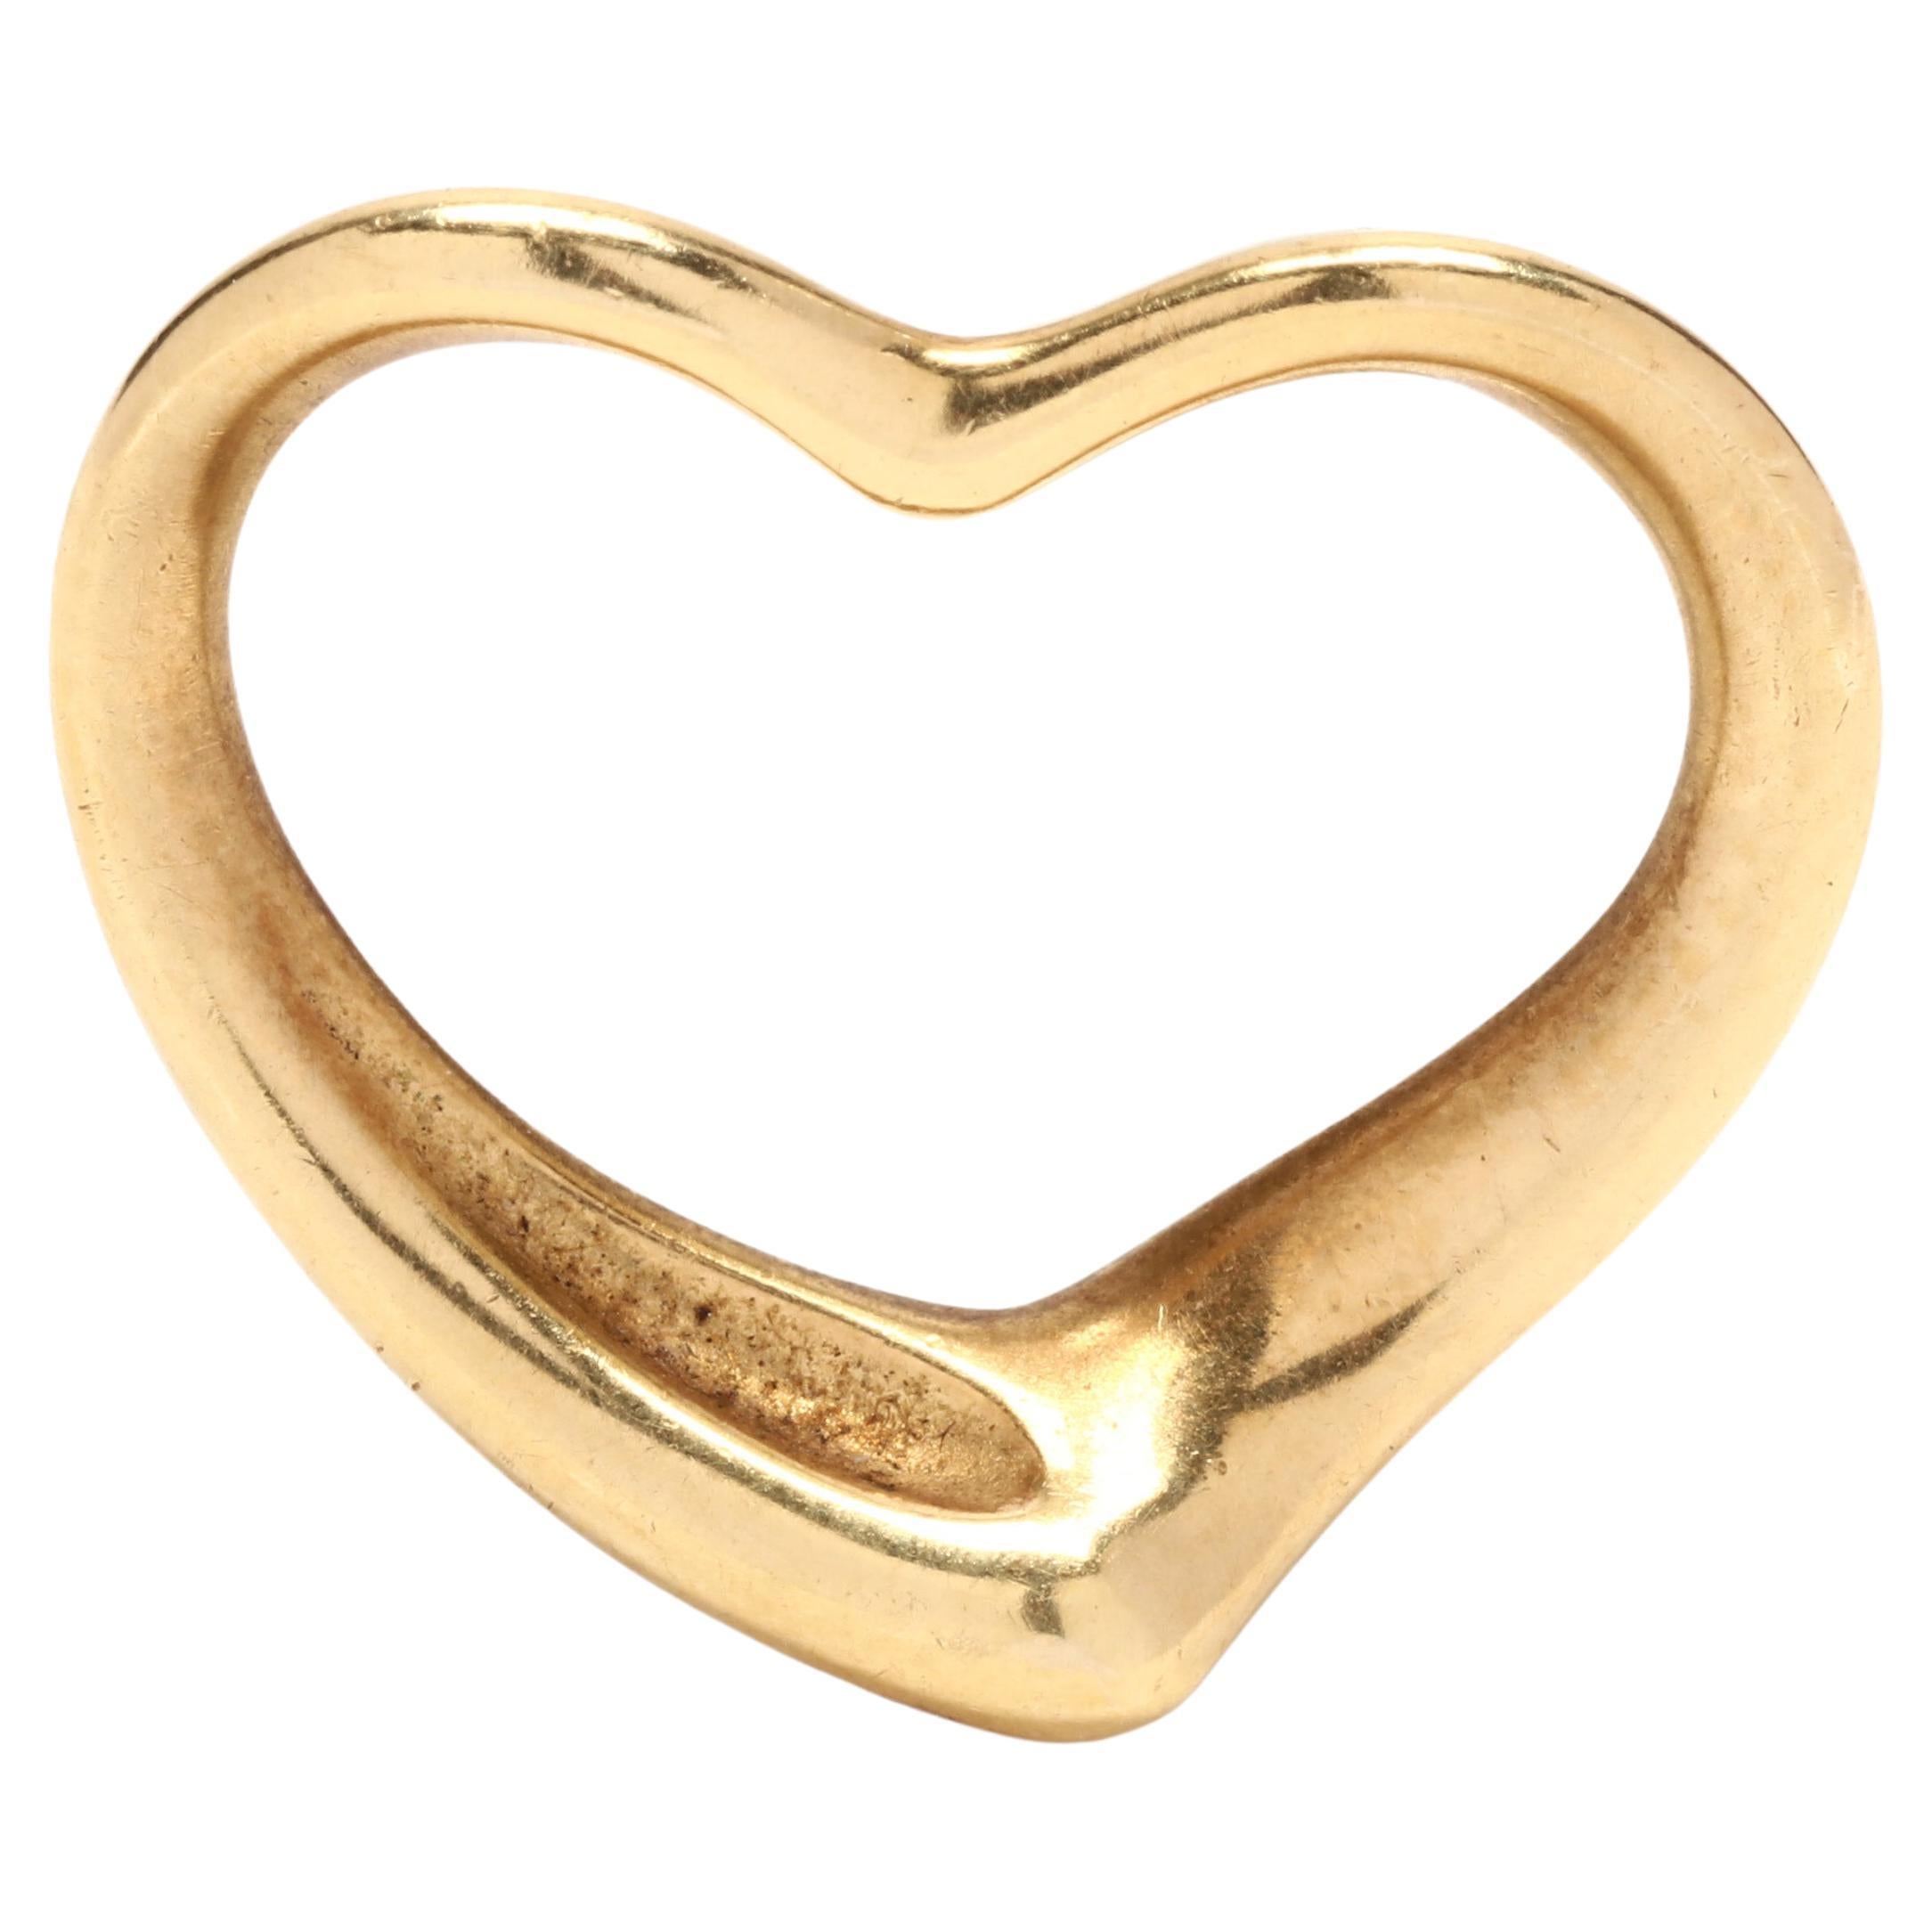 Tiffany and Co Heart Charm, Elsa Peretti Heart Charm, Gold Open Heart Charm